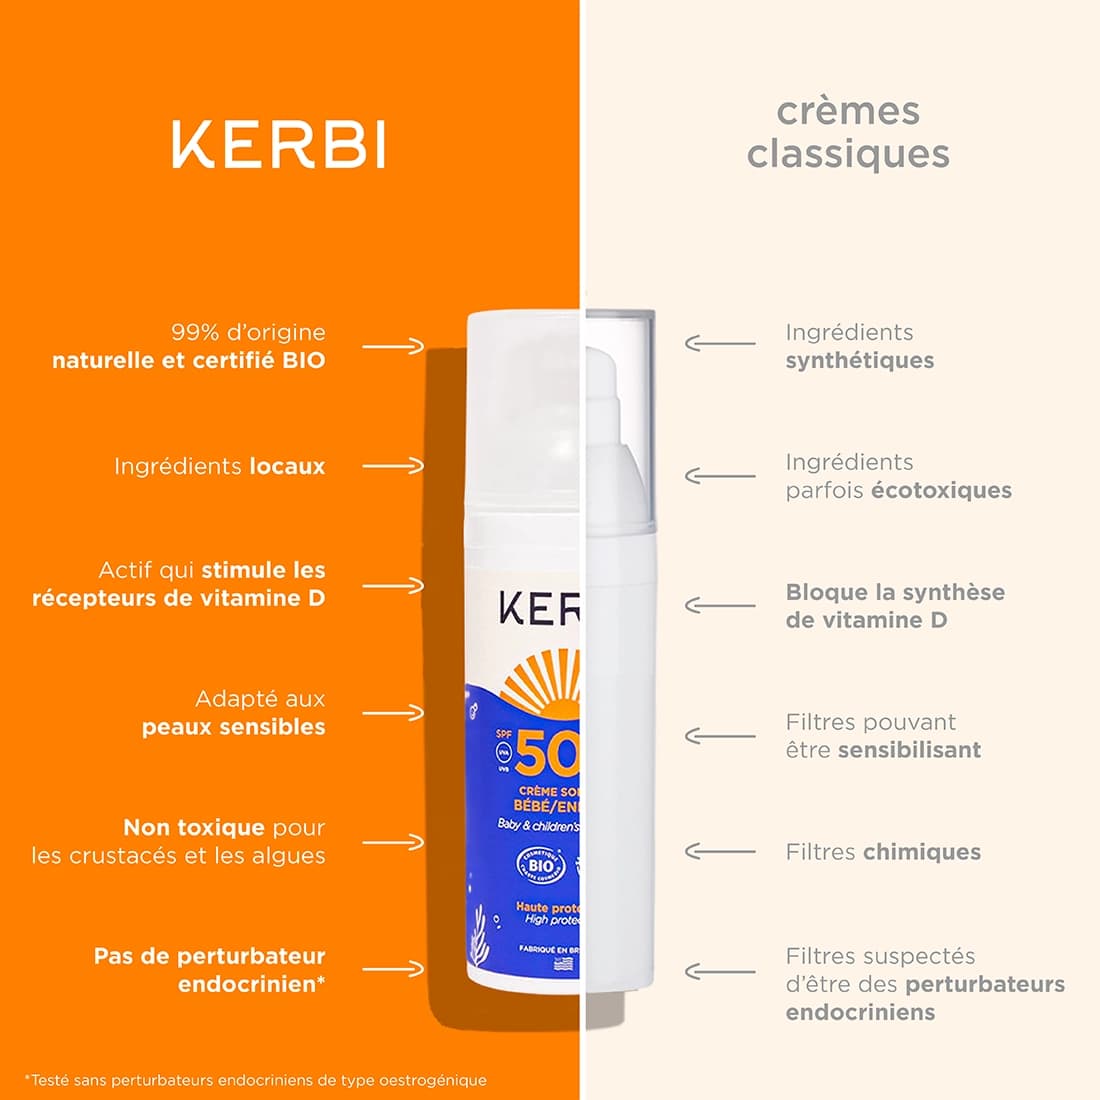 Creme solaire bio SPF50 Kerbi - Formule douce, spécialement conçue pour la peau délicate des enfants, protection UVA/UVB